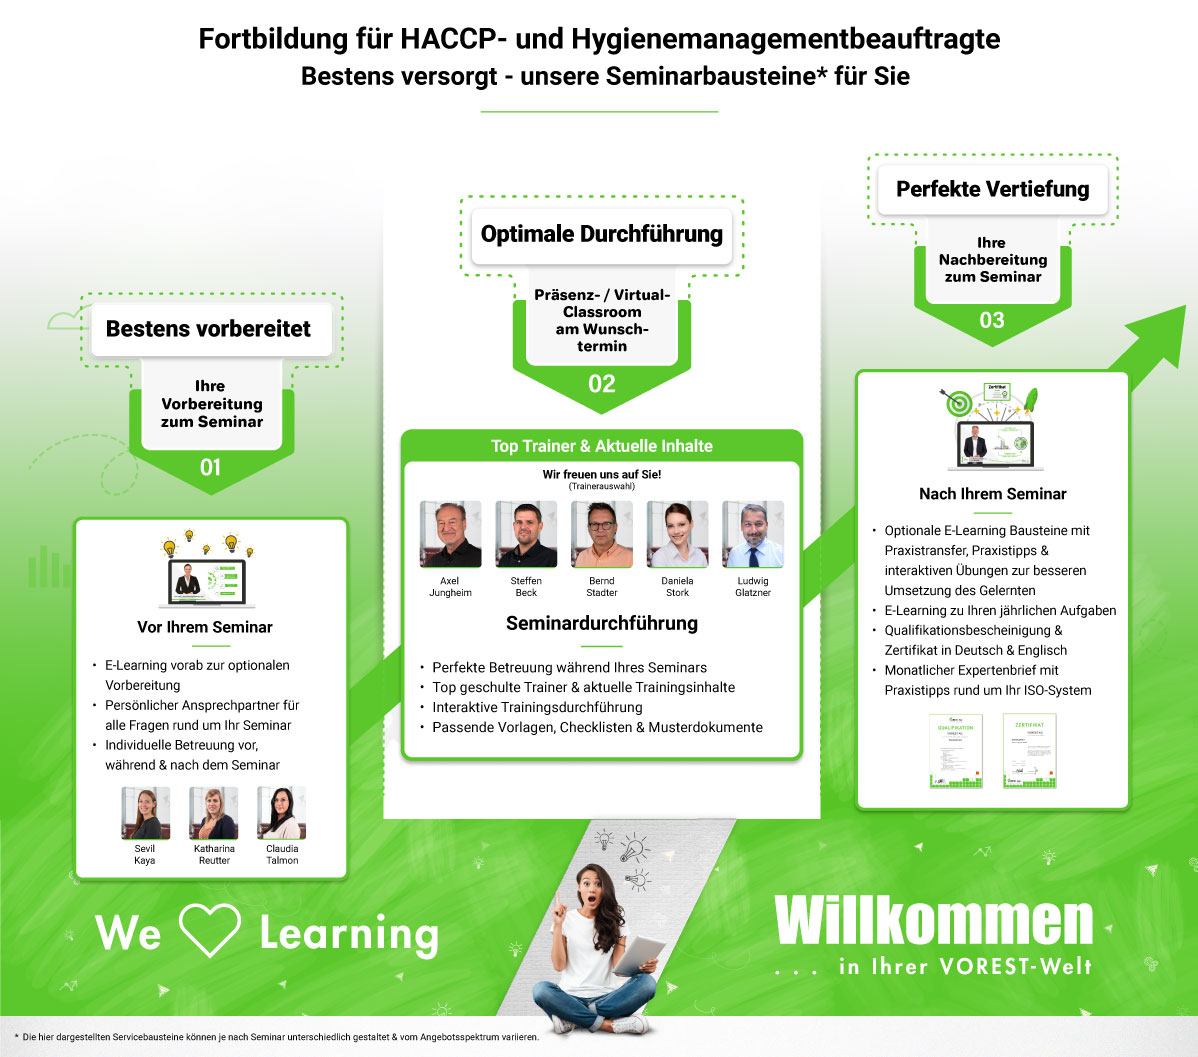 Fortbildung für HACCP- und Hygienemanagementbeauftragte